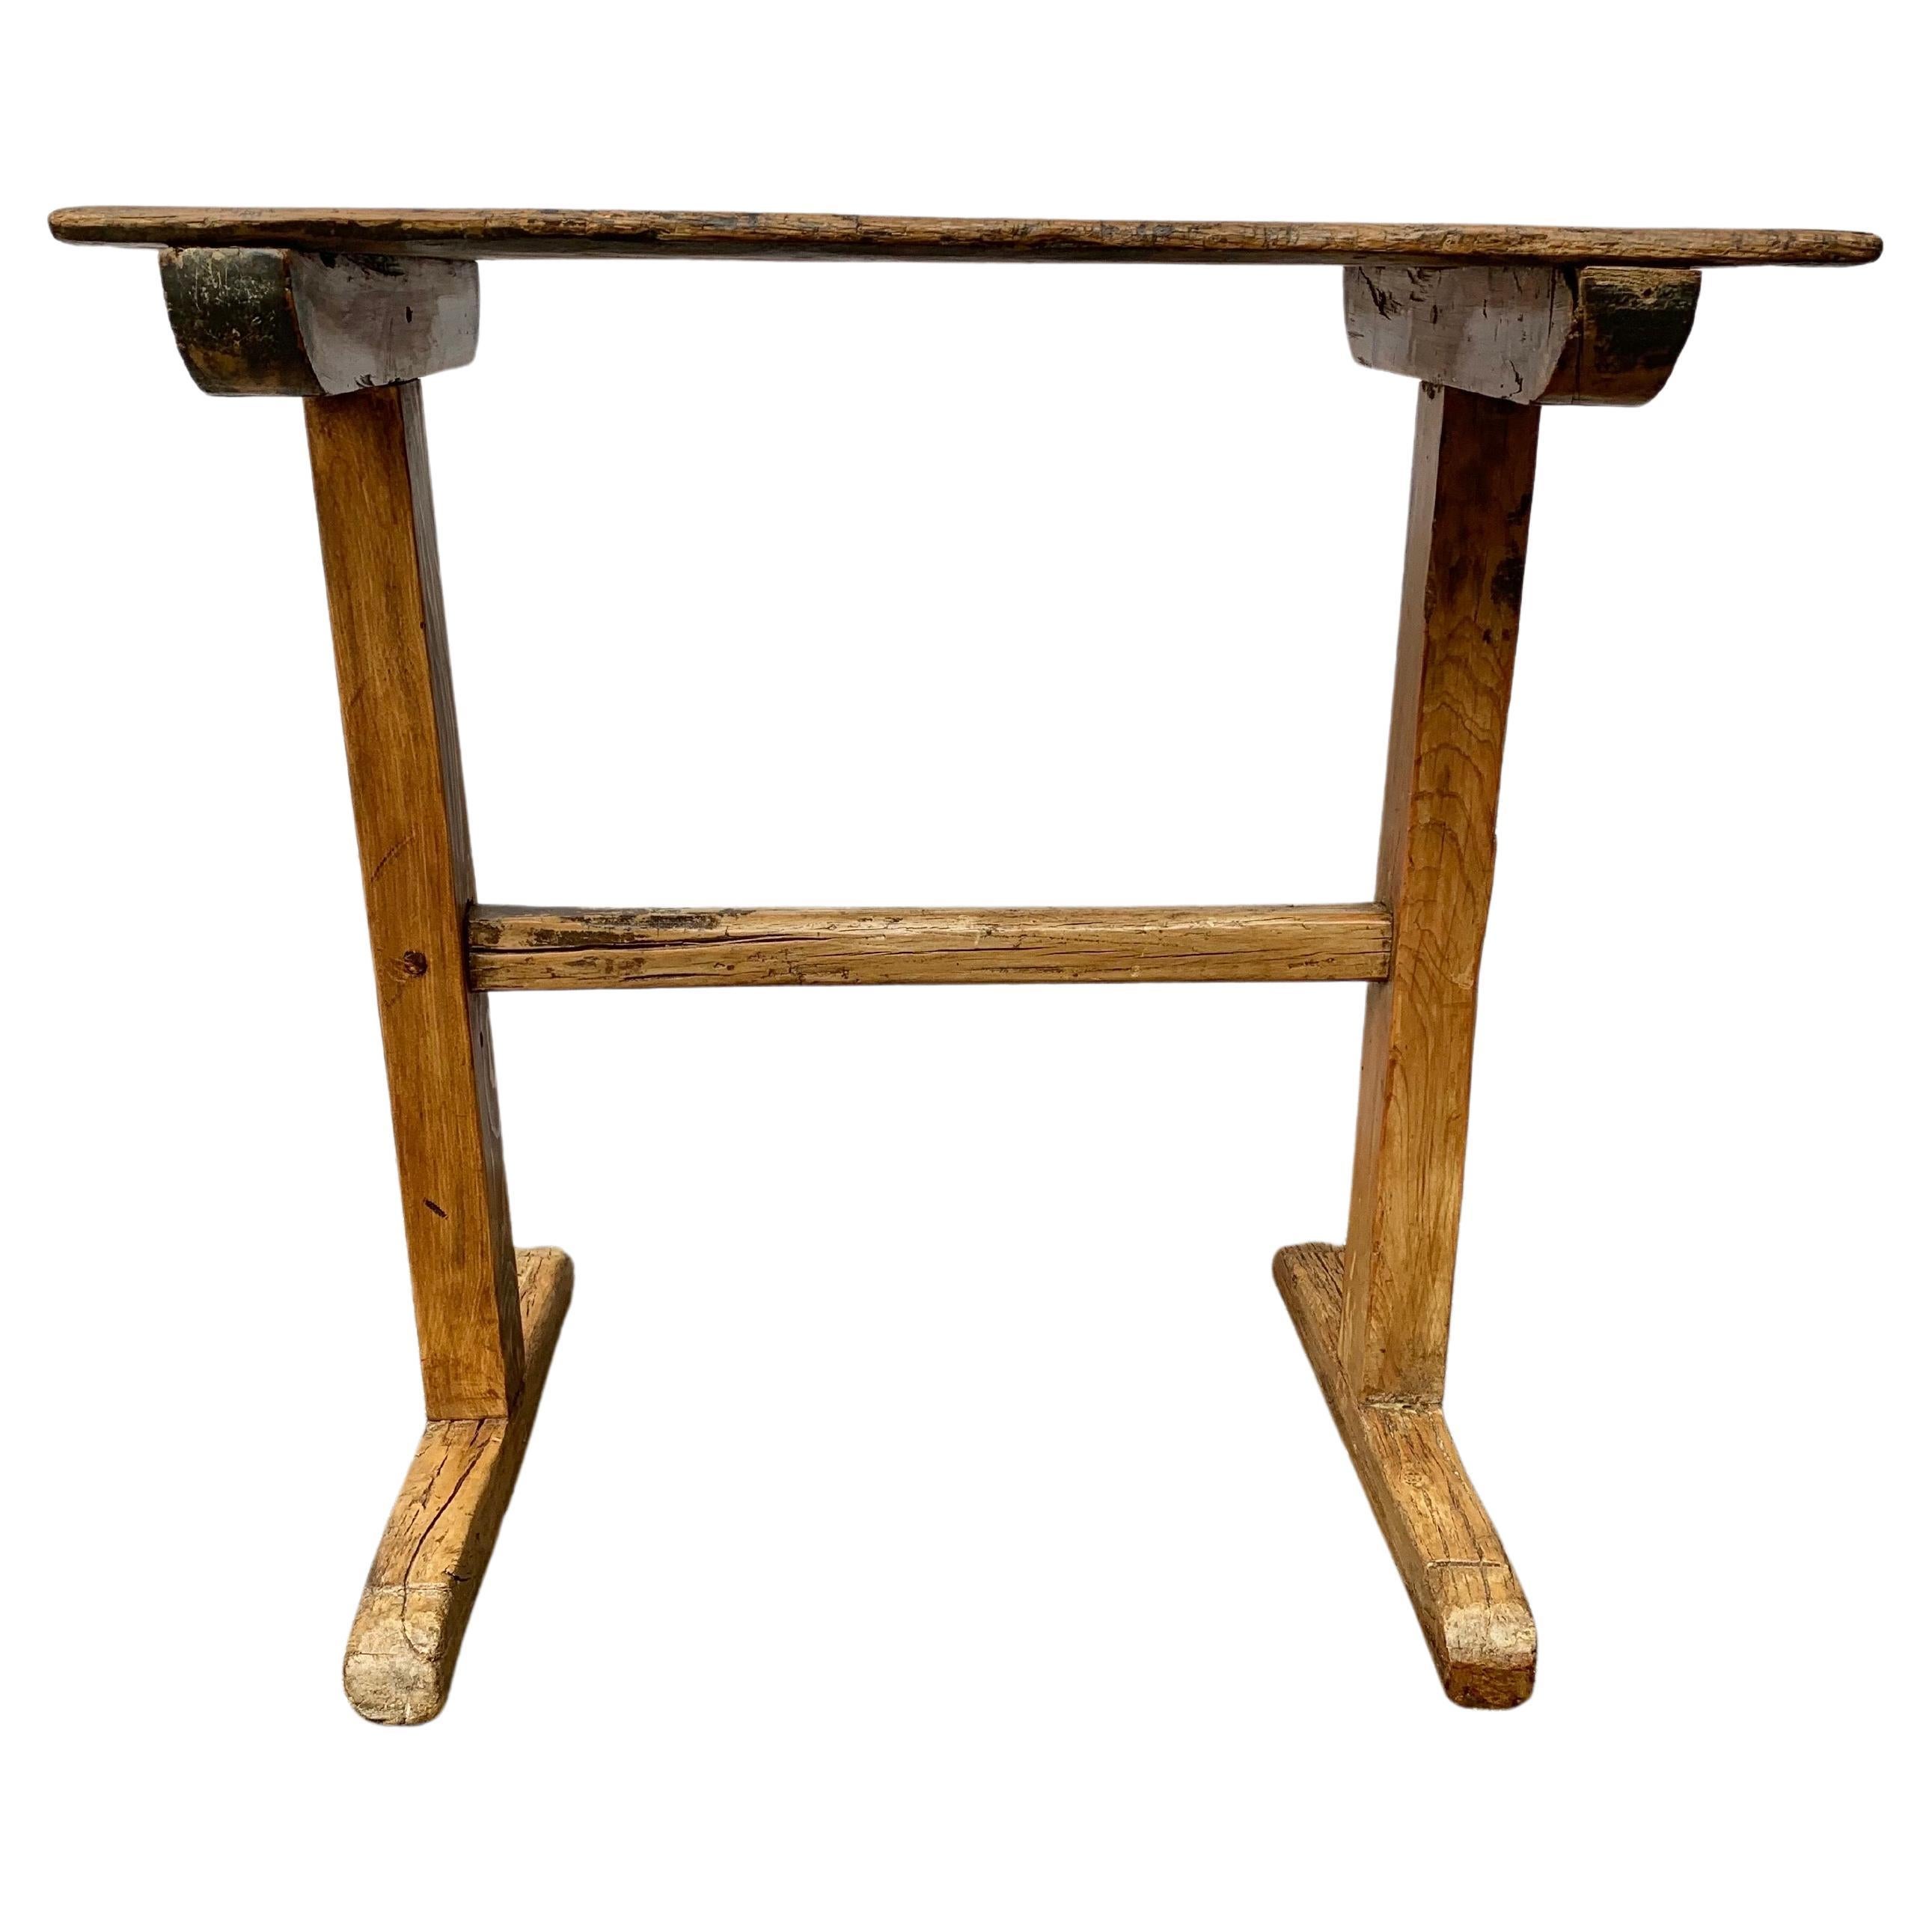 Dieser französische Beistelltisch aus dem 19. Jahrhundert, der in Südfrankreich gefunden wurde, wurde in den späten 1800er Jahren aus altem Kiefernbestand gefertigt. Das Stück hat eine rechteckige Tischplatte, die auf zwei Beinen ruht. Jedes der